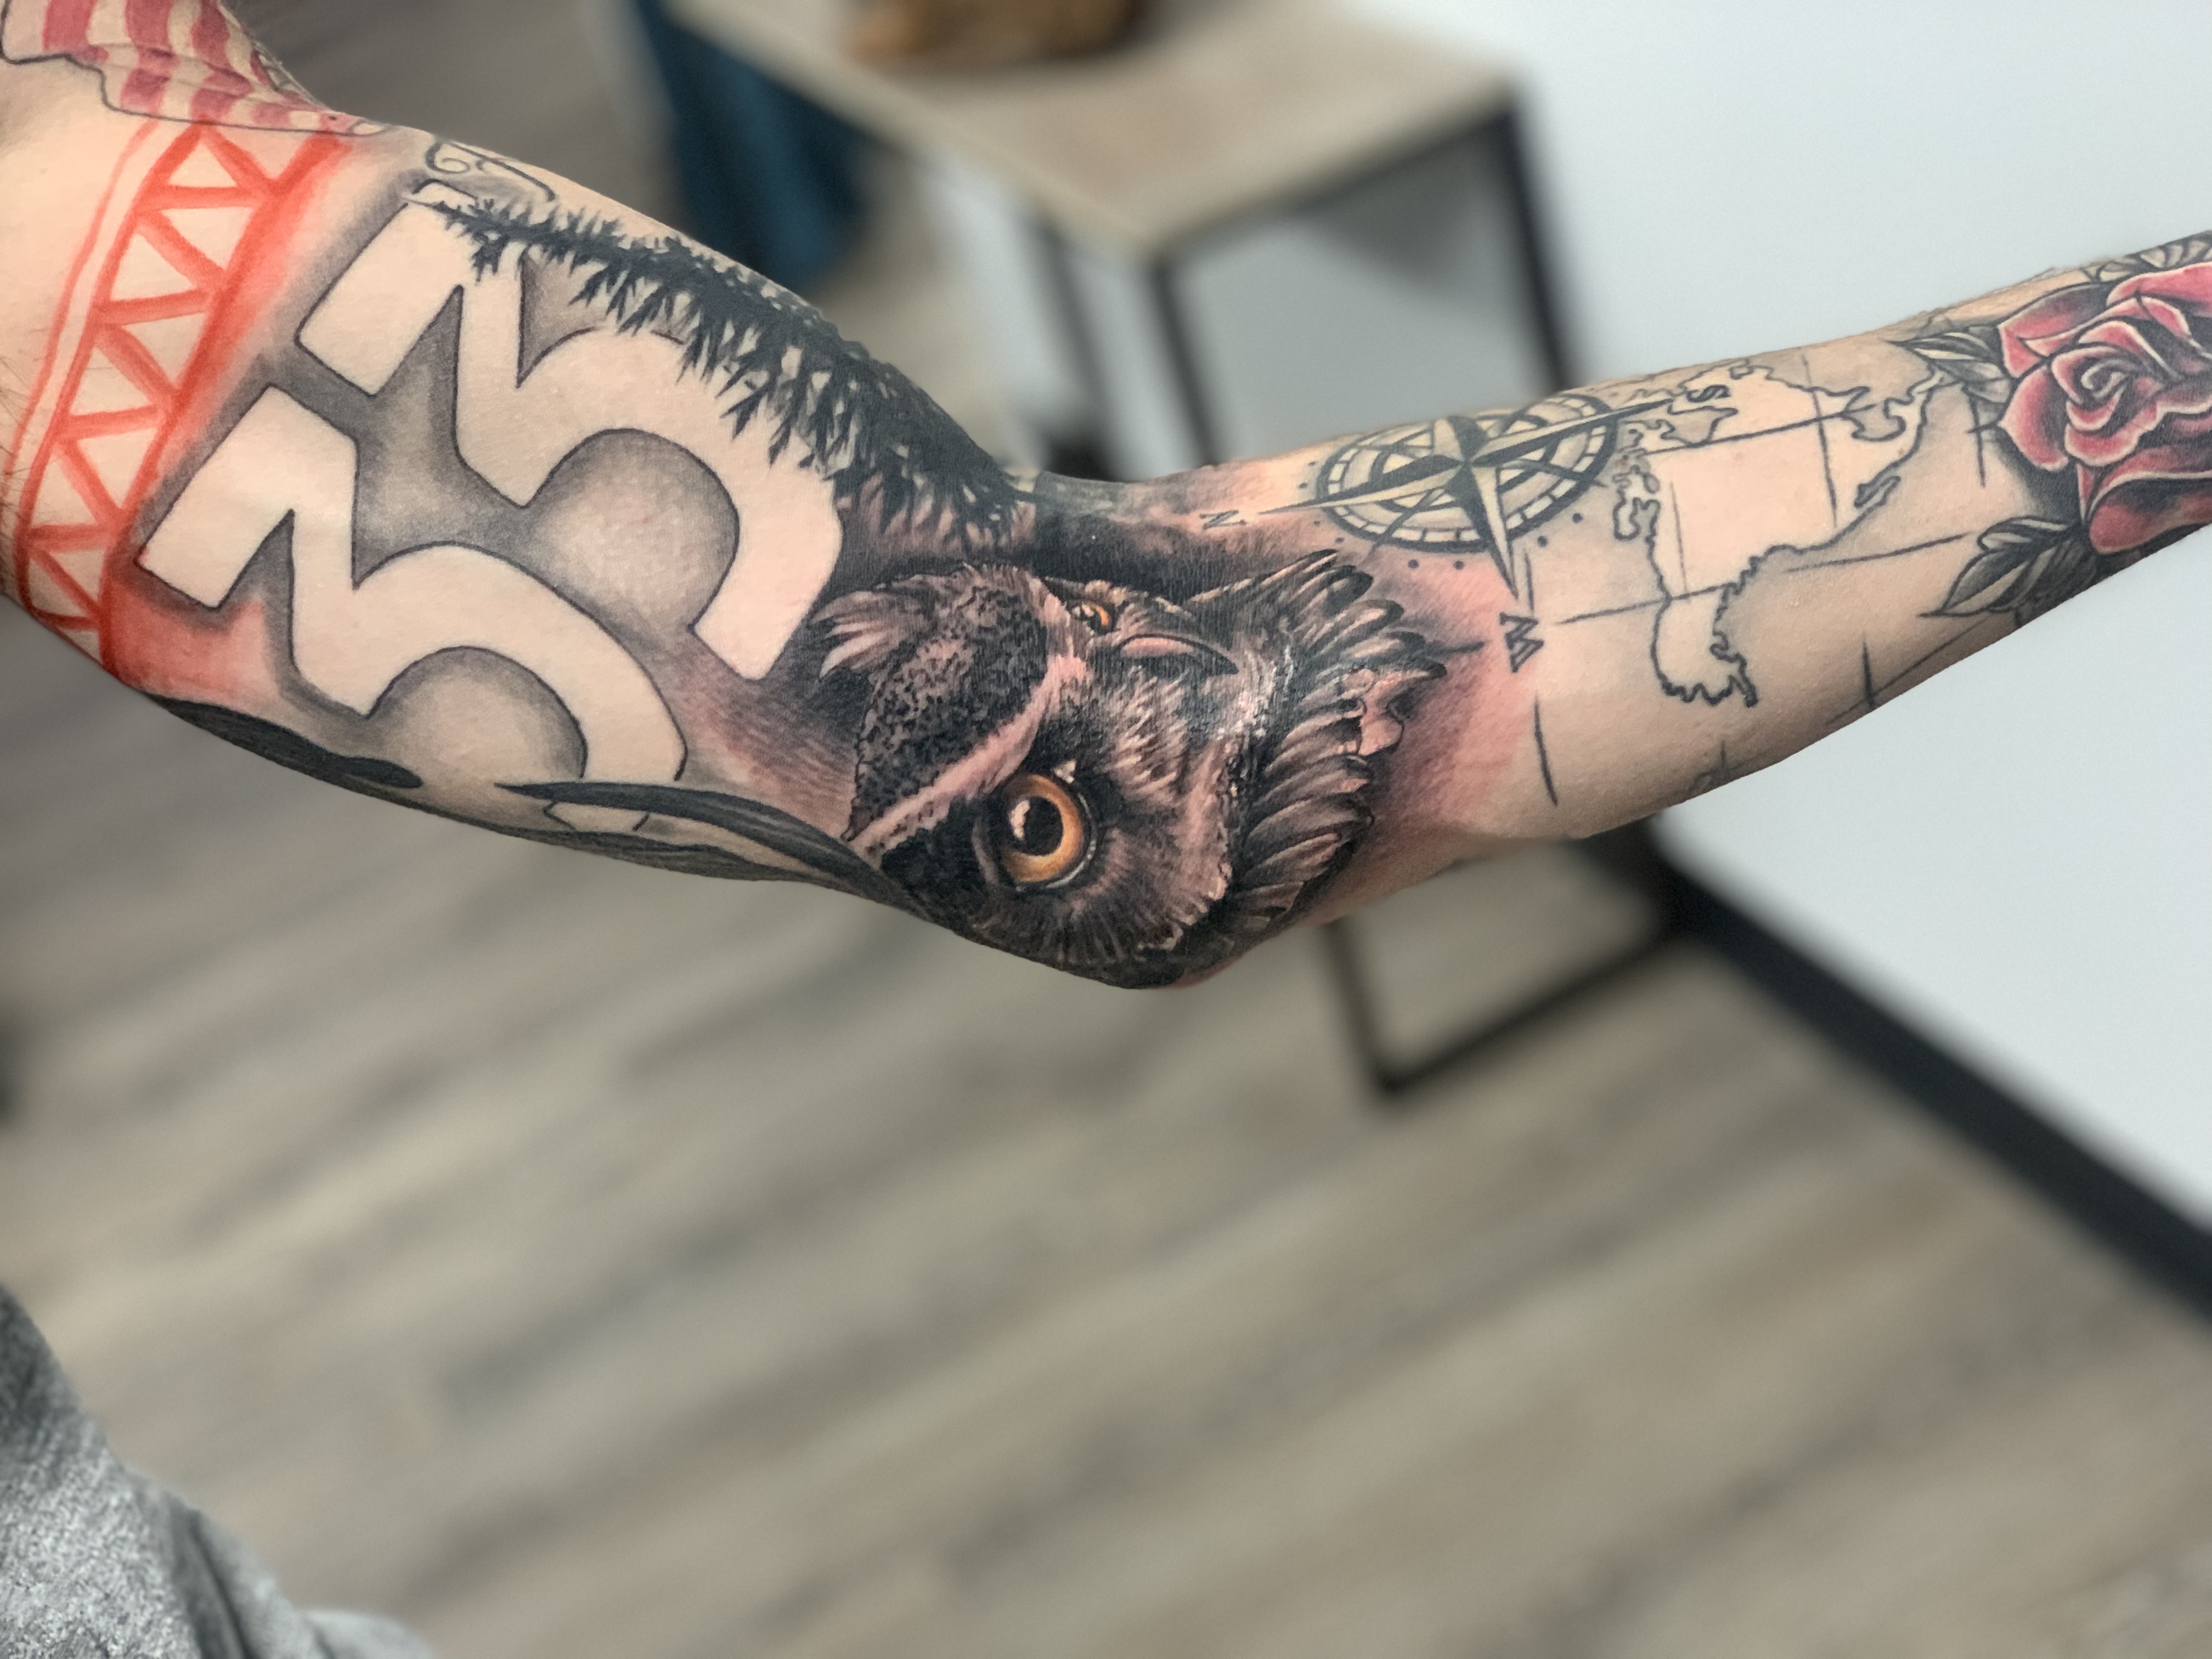 Tim : Tattoo Artist